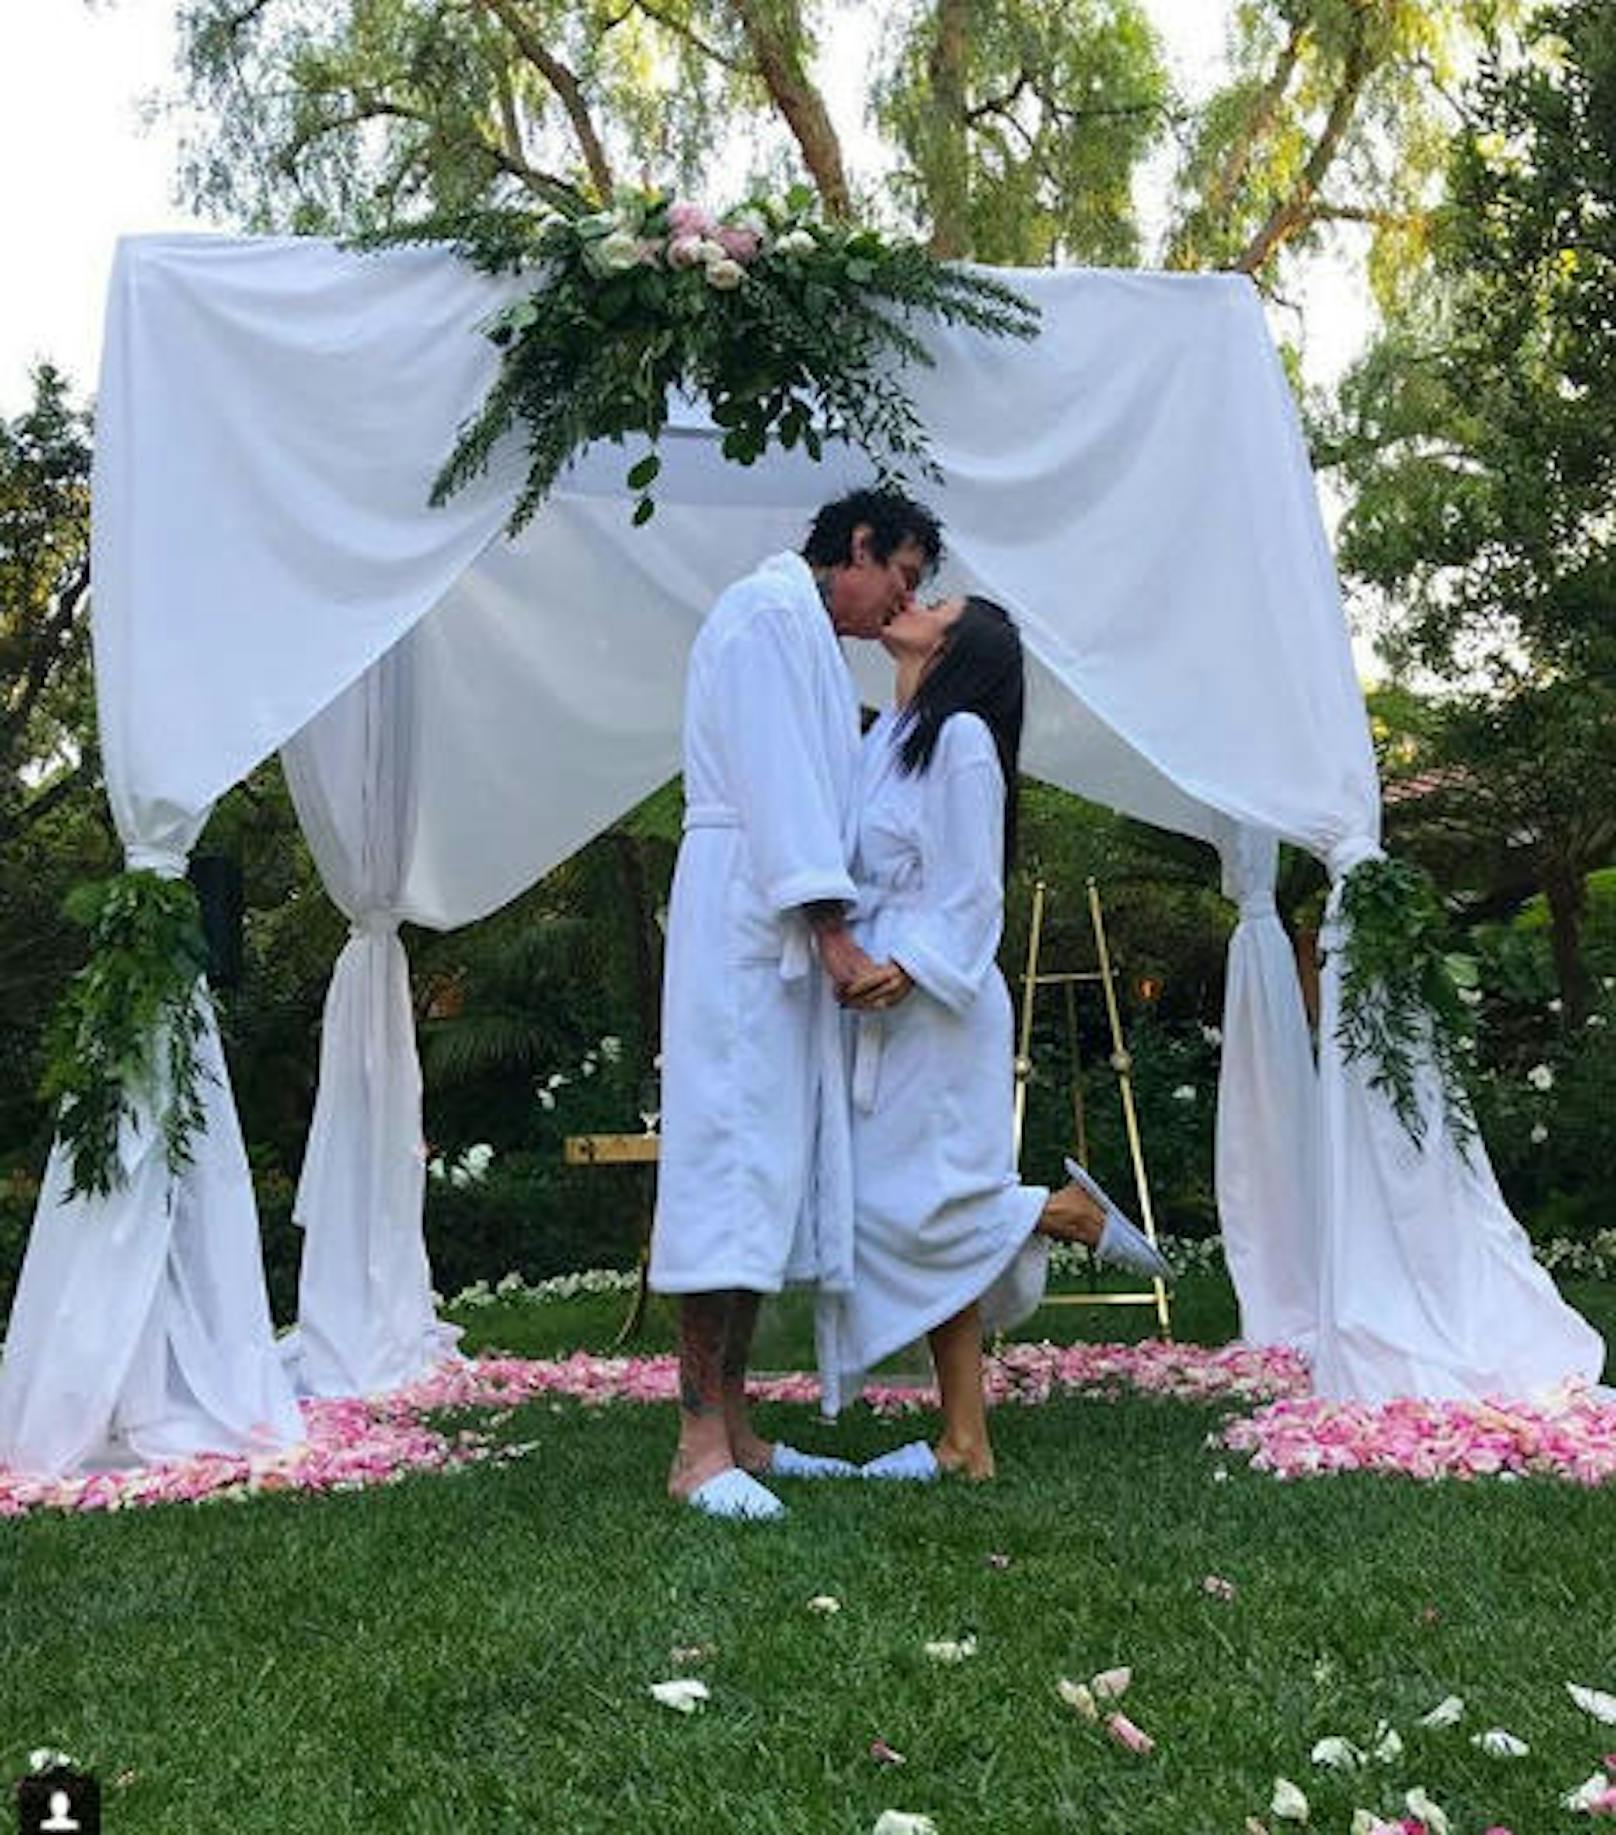 Alles Fake: Ende Mai 2018 posierten Tommy Lee und seine Verlobte Brittany Furlon vor einem Hochzeitspavillon und verbreiteten ihr "Hochzeitsfoto" per Instagram